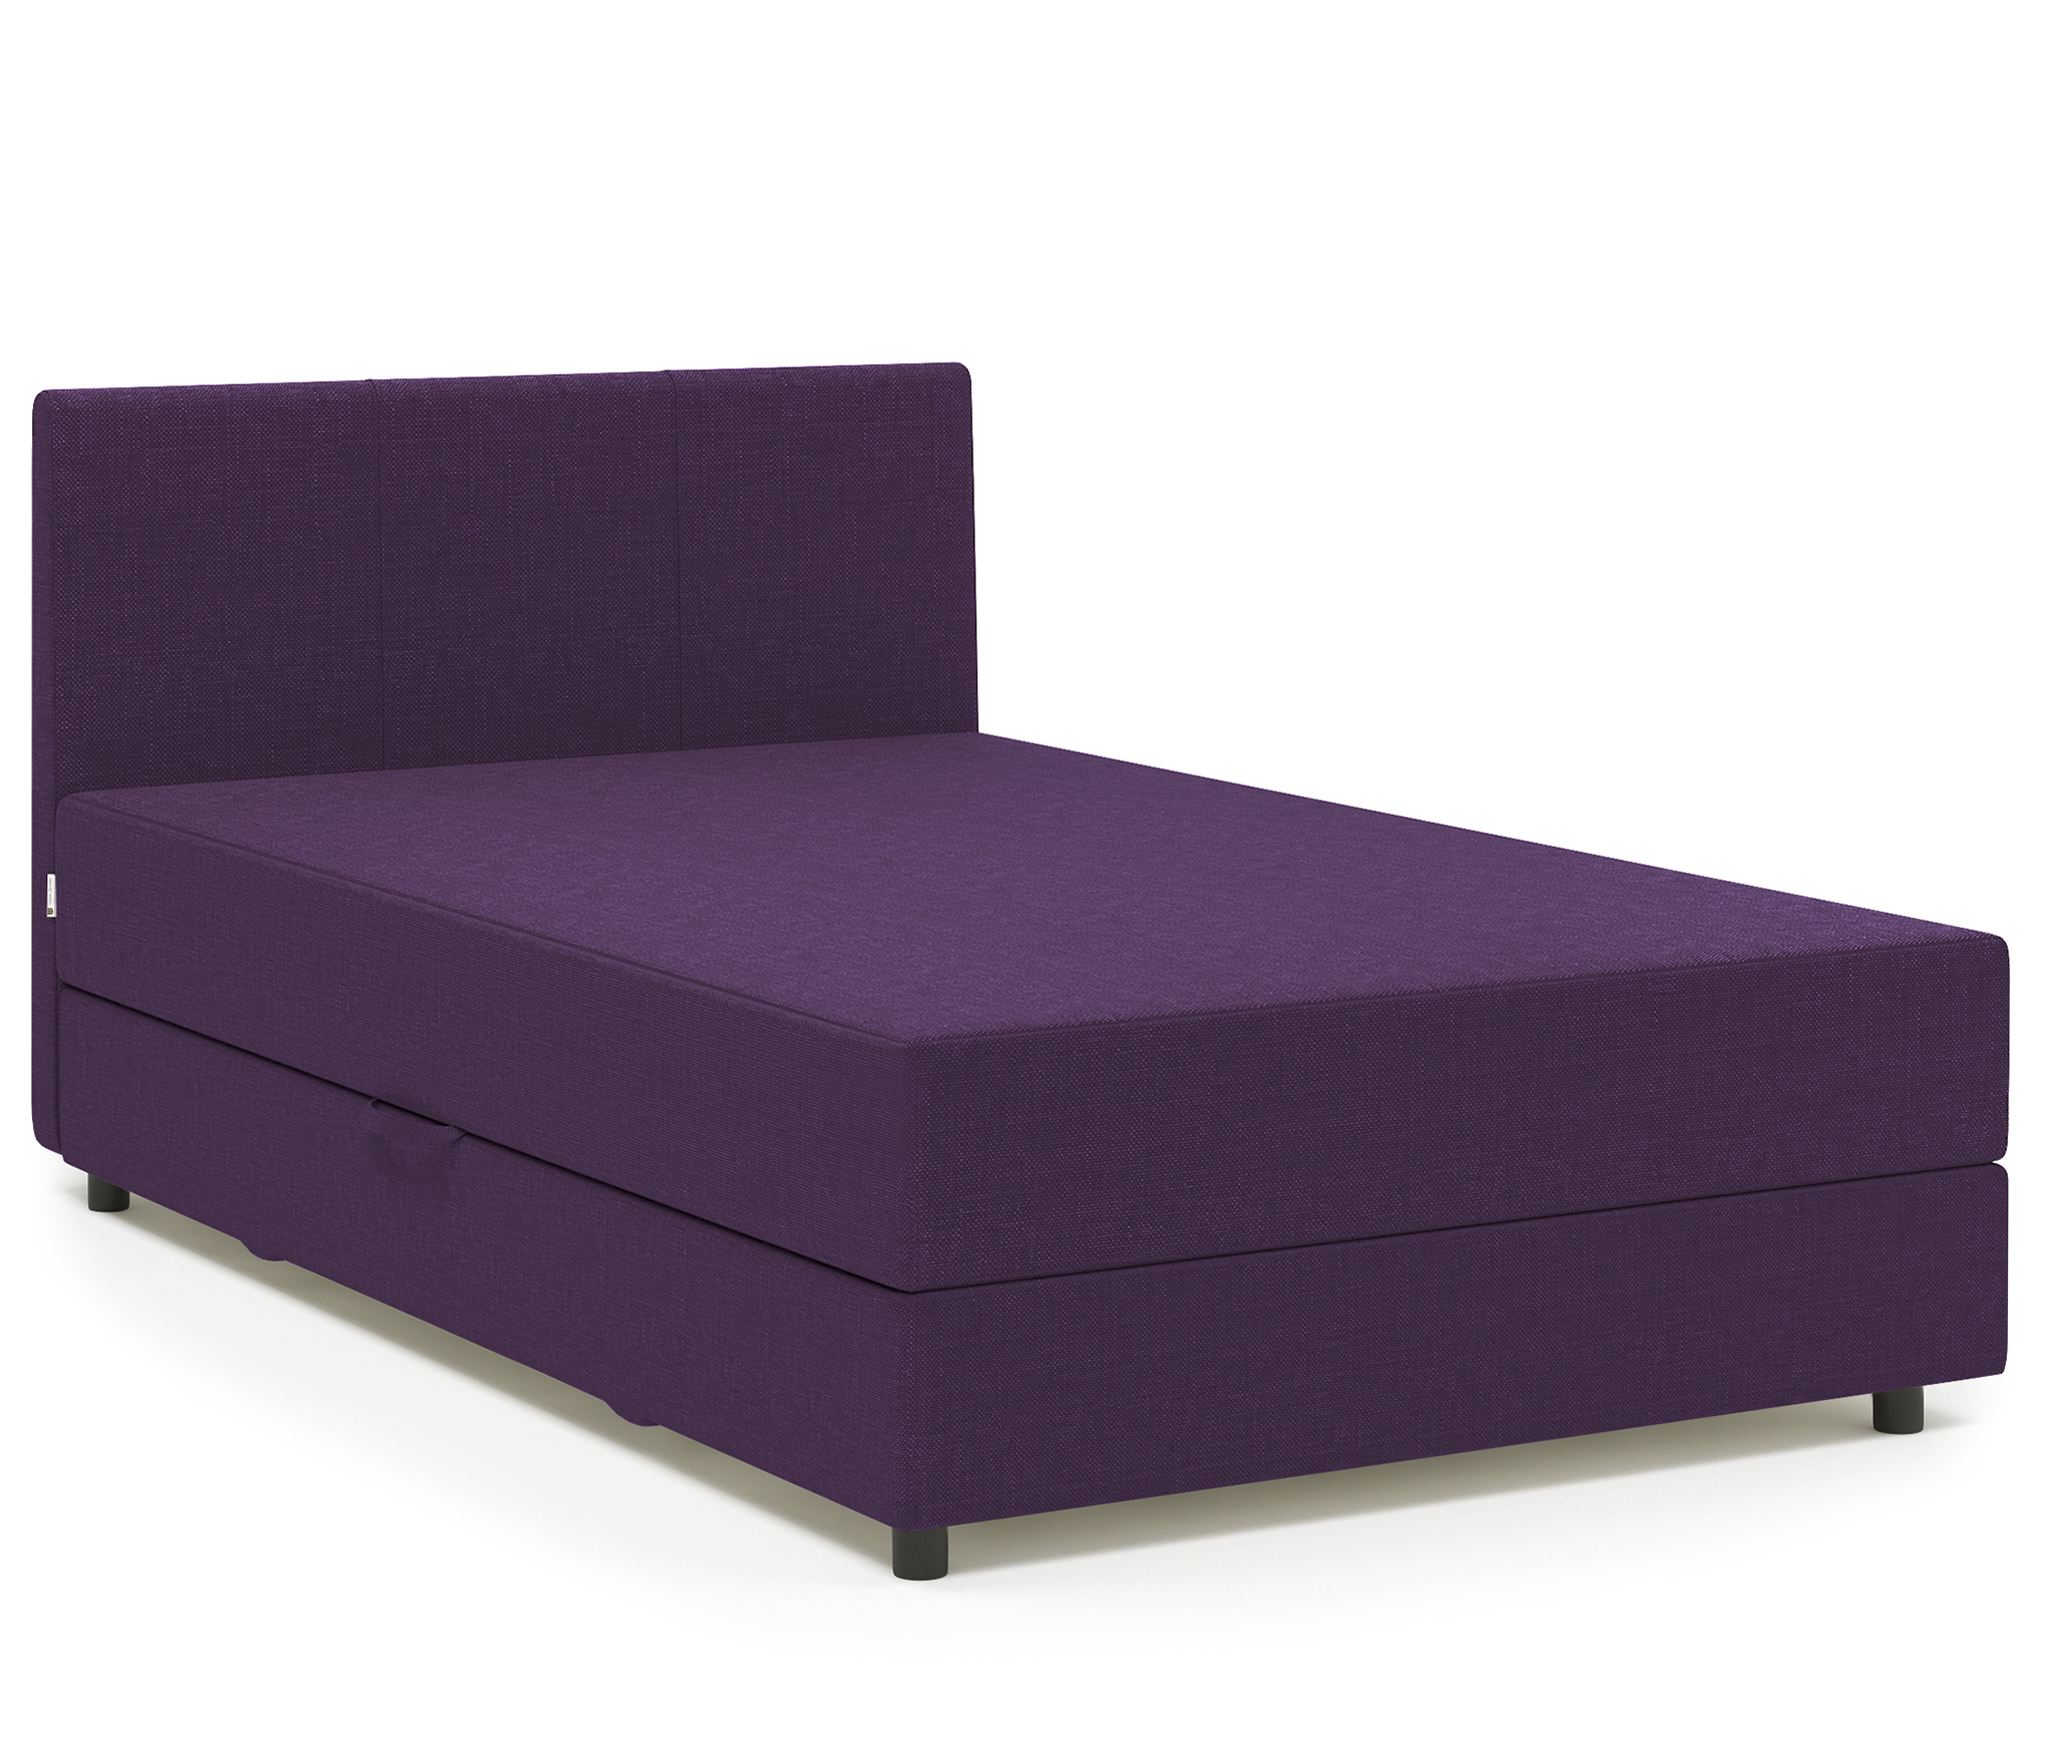 фото Тахта шарм-дизайн классика 140 рогожка фиолетовый